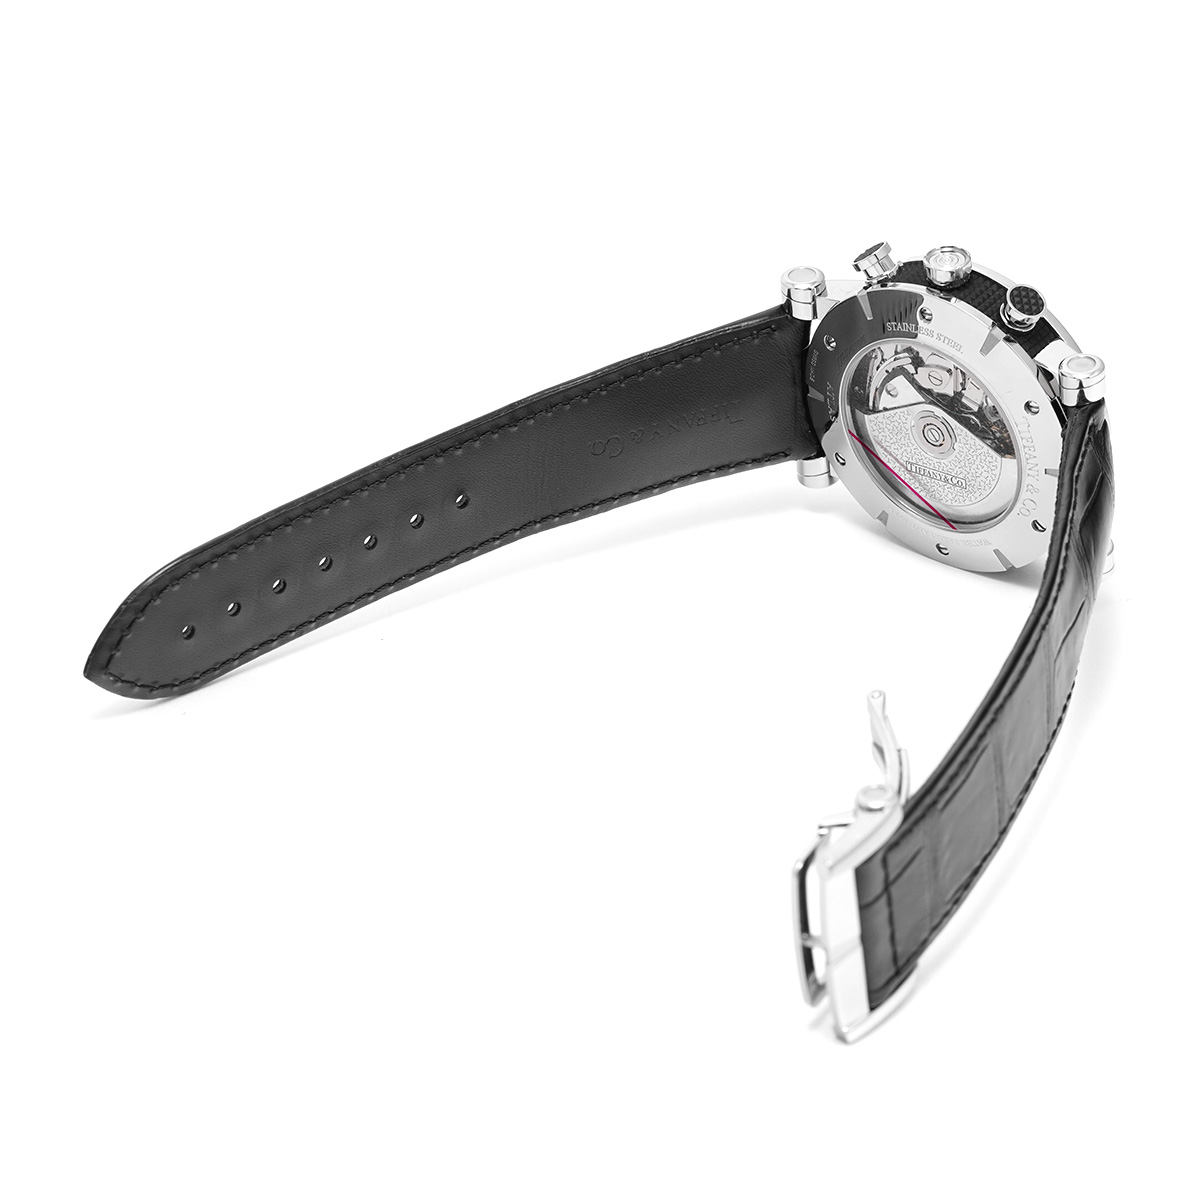 ティファニー TIFFANY & Co. Z1000.70.12A10A00A ブラック /グレー メンズ 腕時計